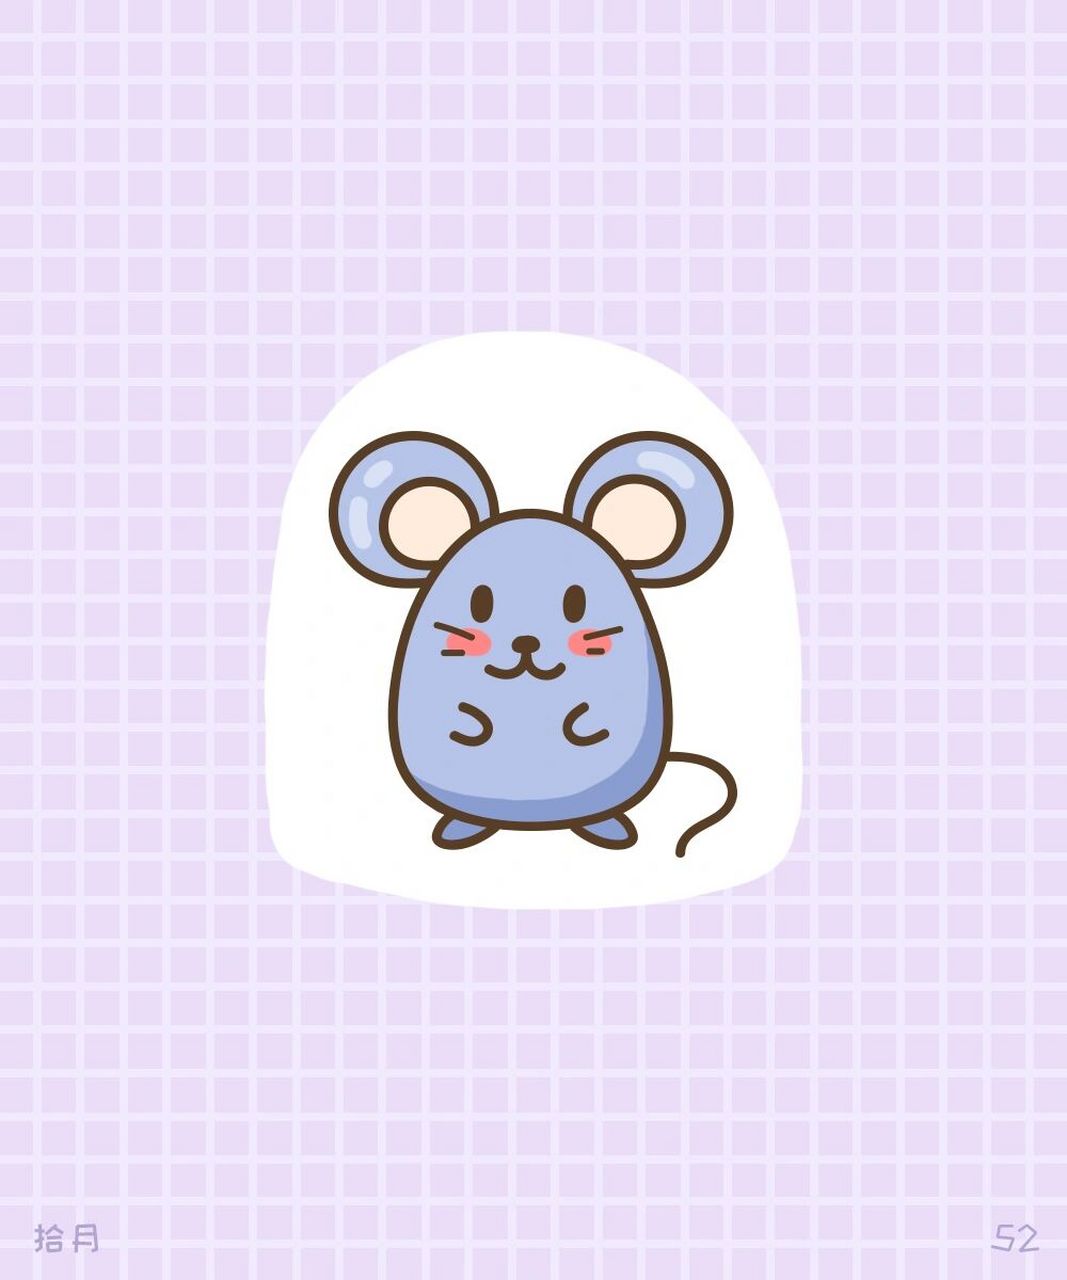 简笔画教程·动物系列·小老鼠99 可爱简单的小老鼠,是不是很容易?